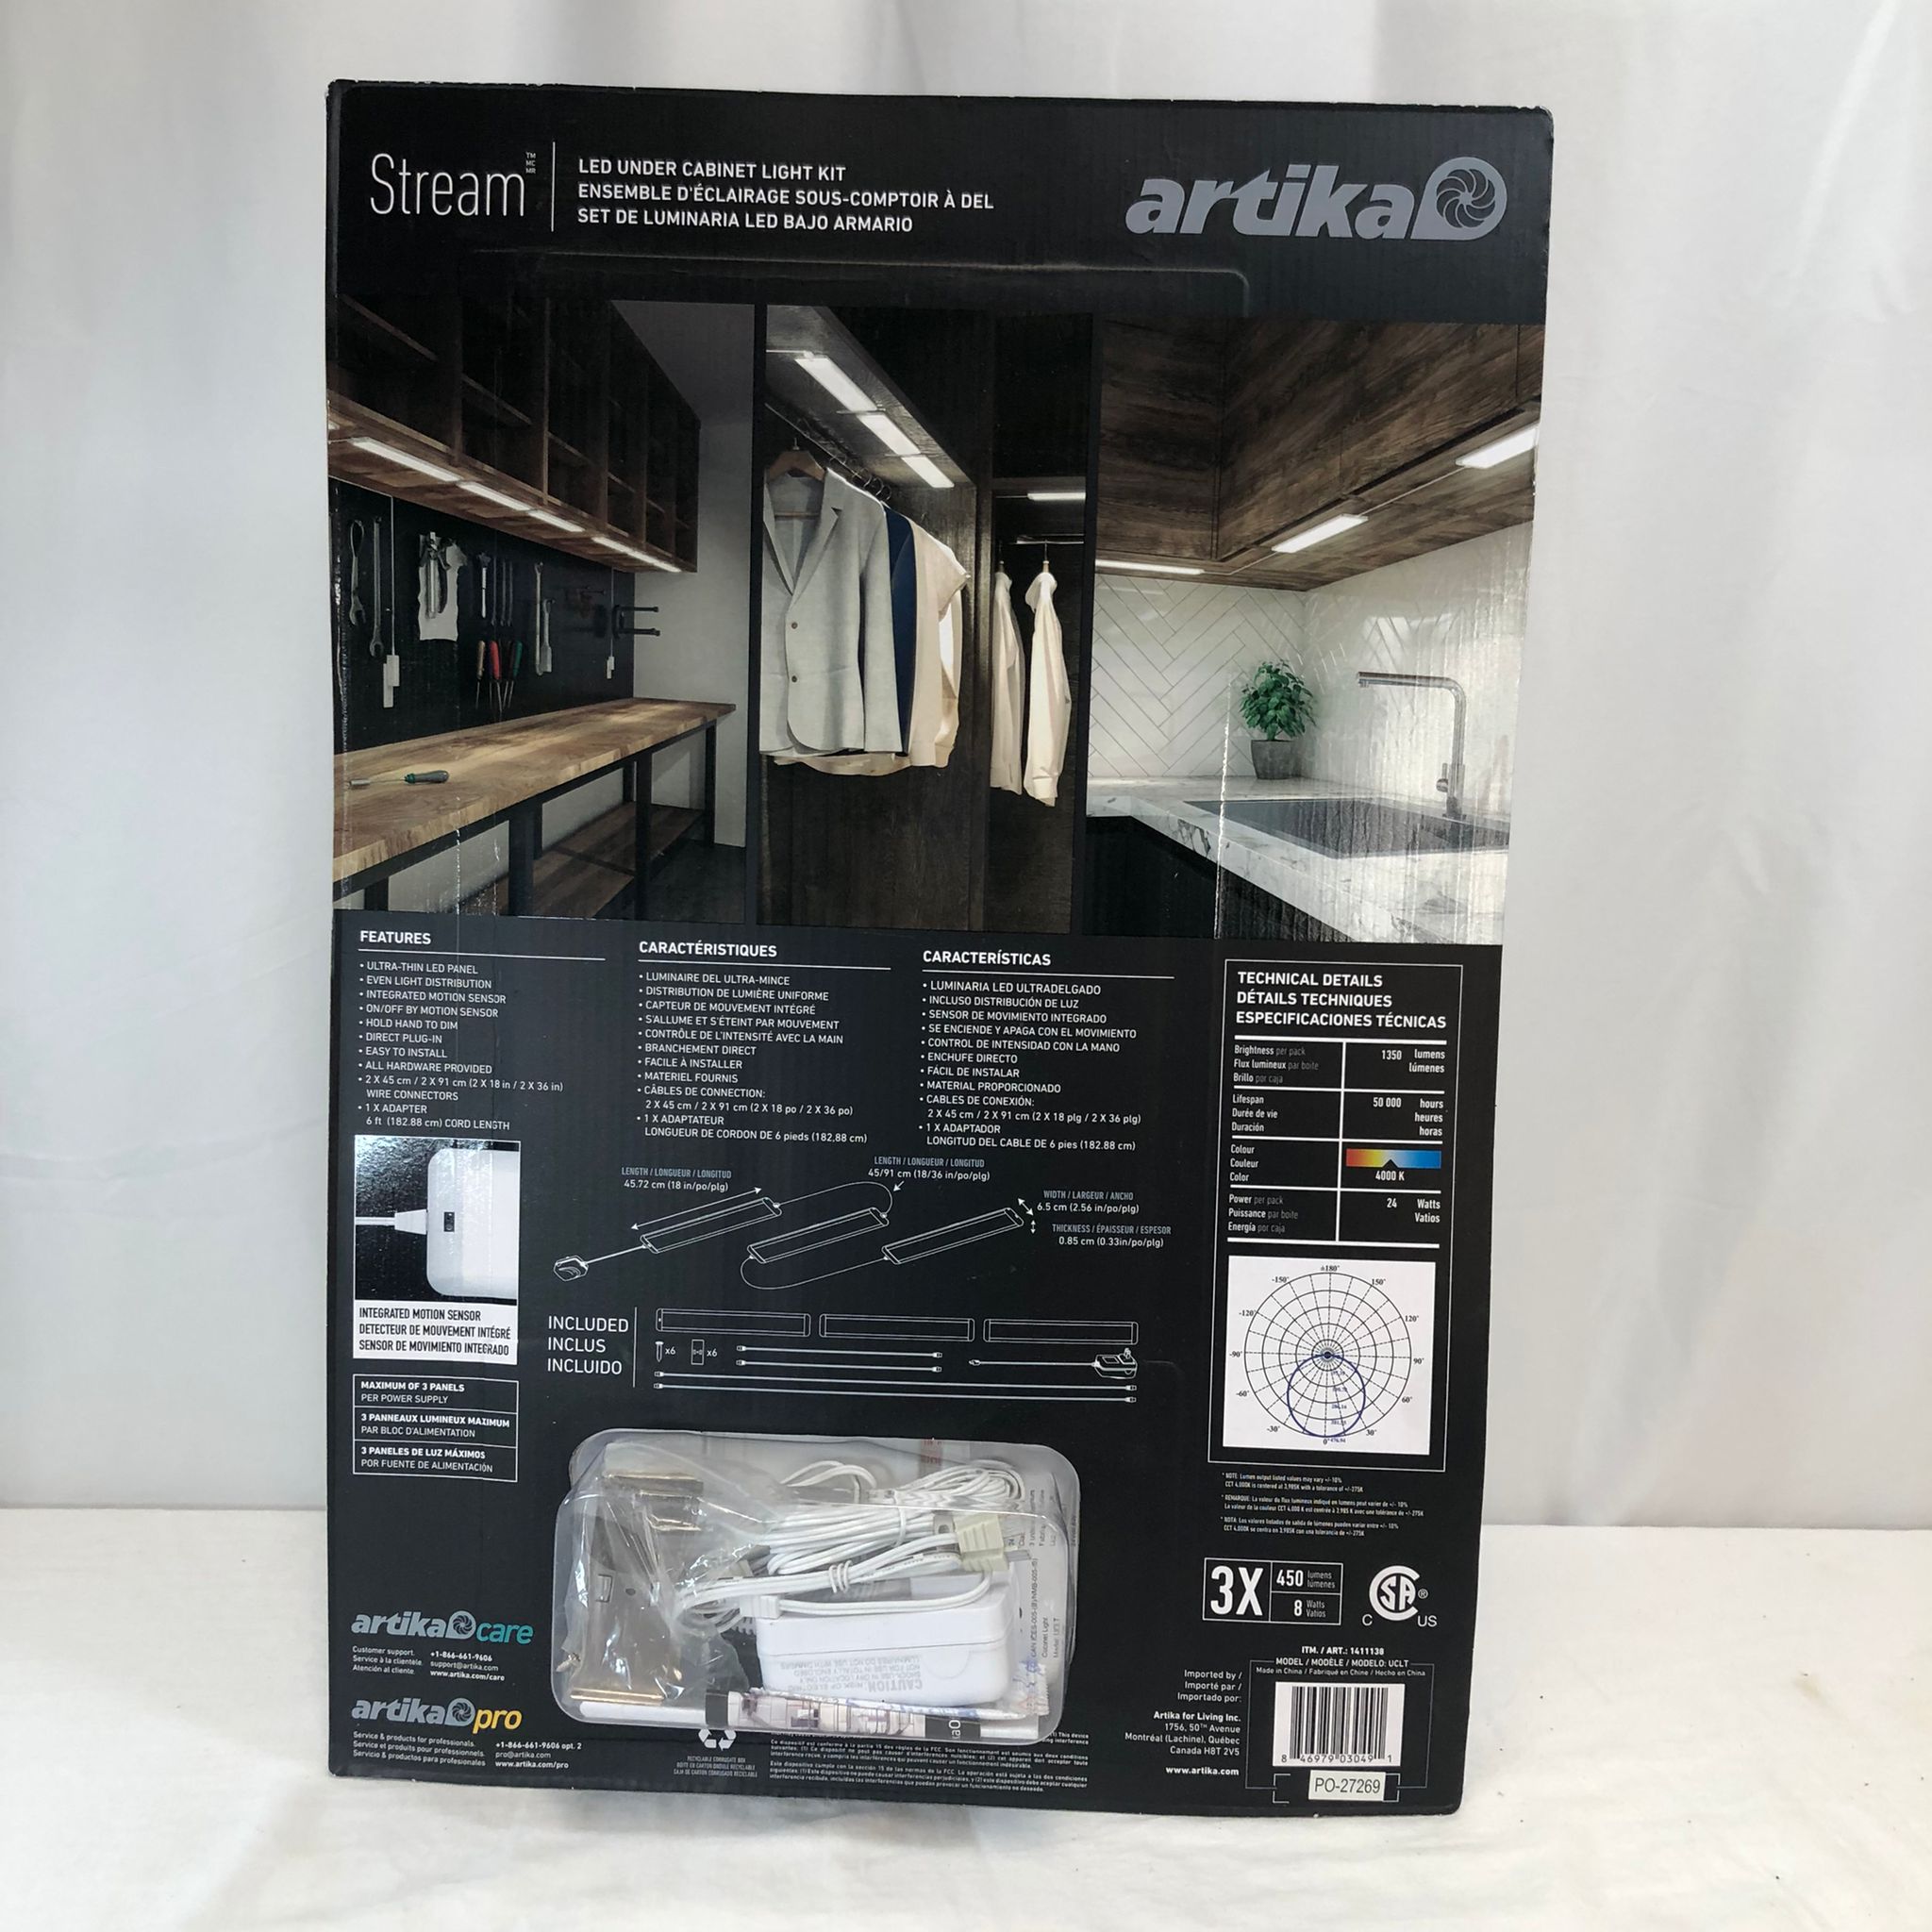 Artika Stream LED Under Cabinet Lighting Kit - 3 Lights, Motion Sensor, Open Box